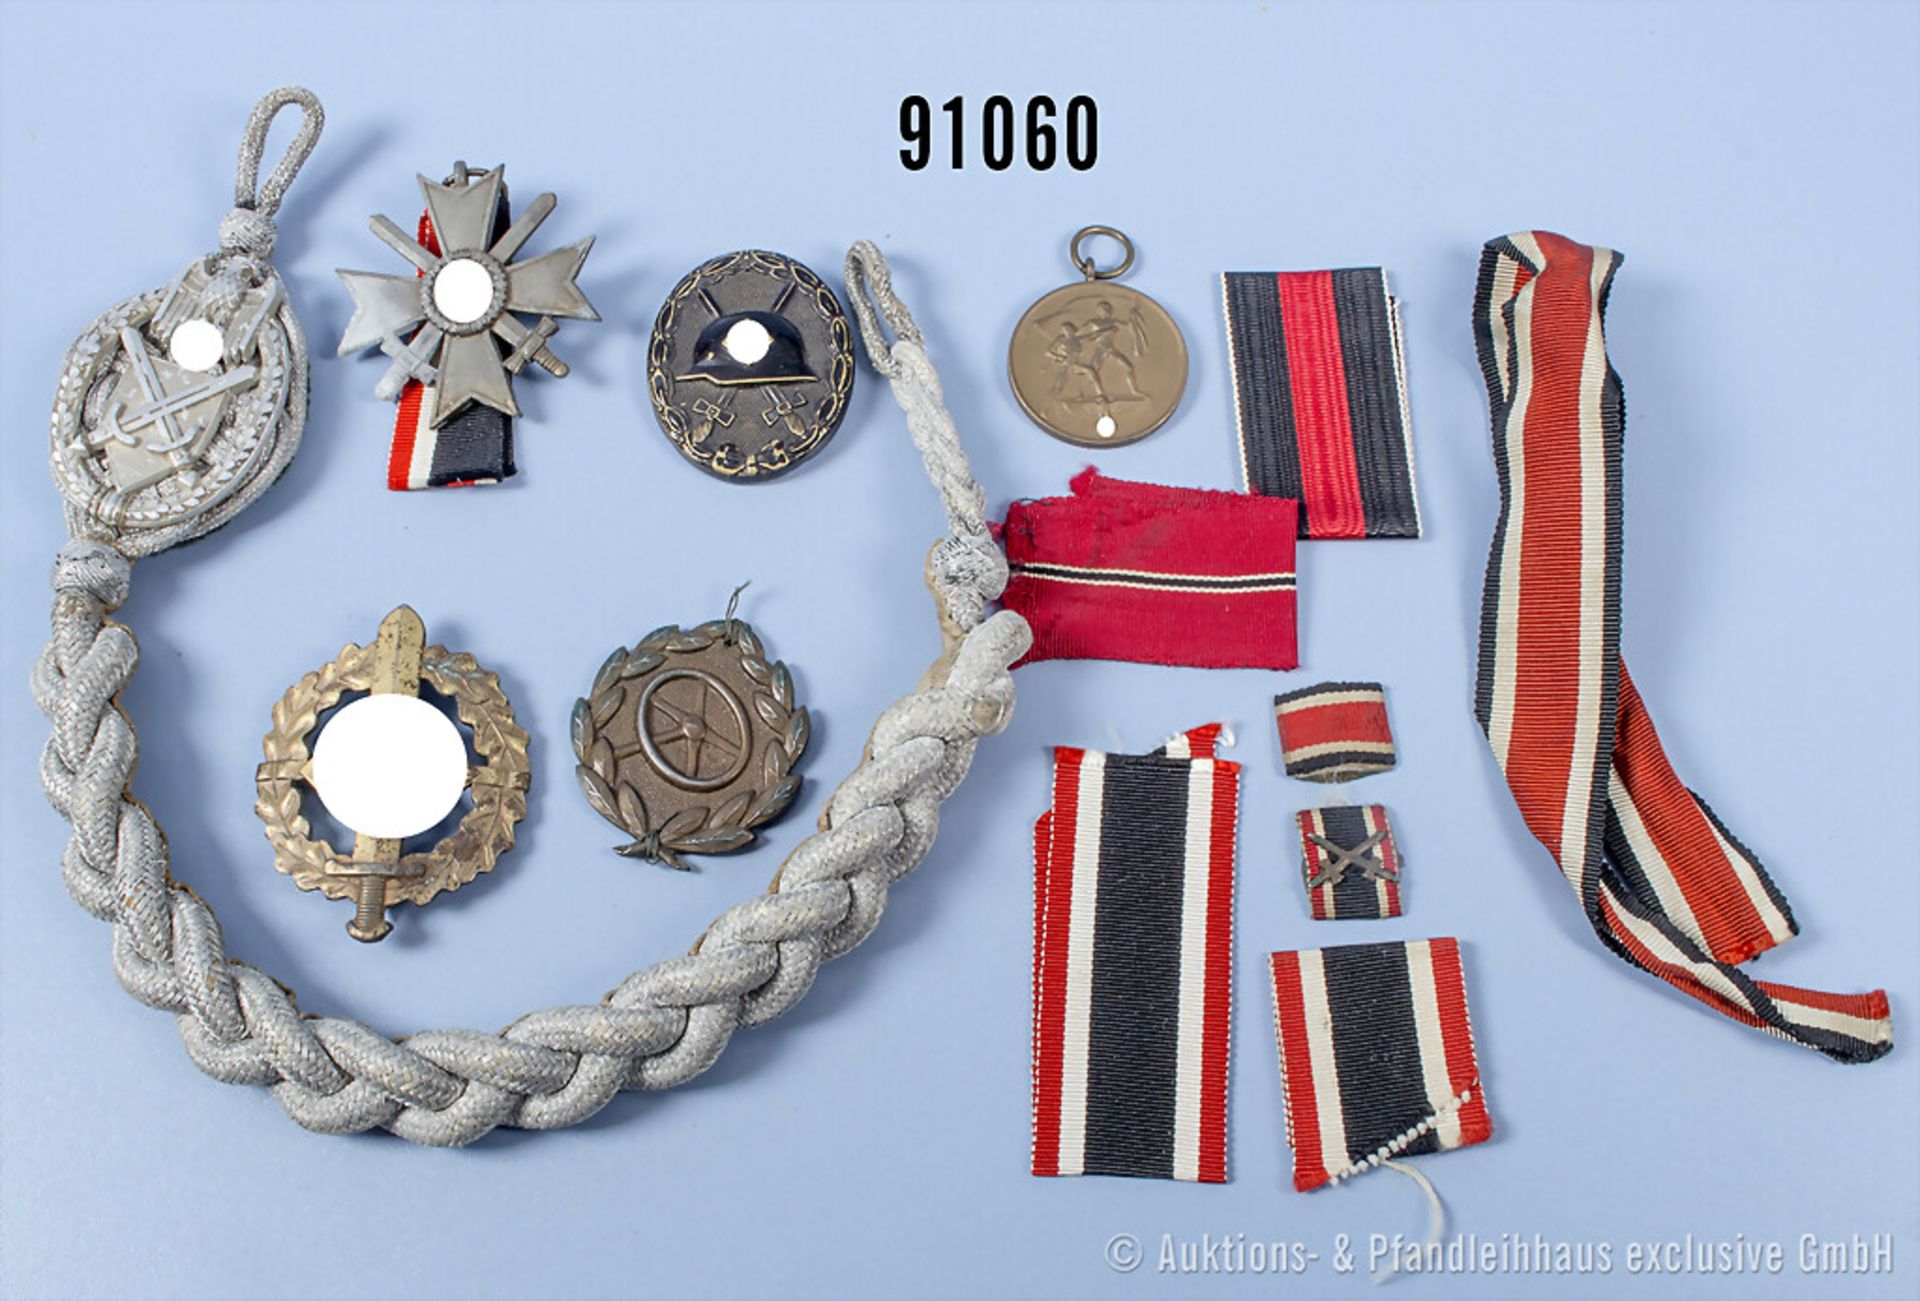 Konv. Sudetenlandmedaille, SA-Sportabzeichen in Bronze, KVK 2. Klasse mit Schwertern, ...